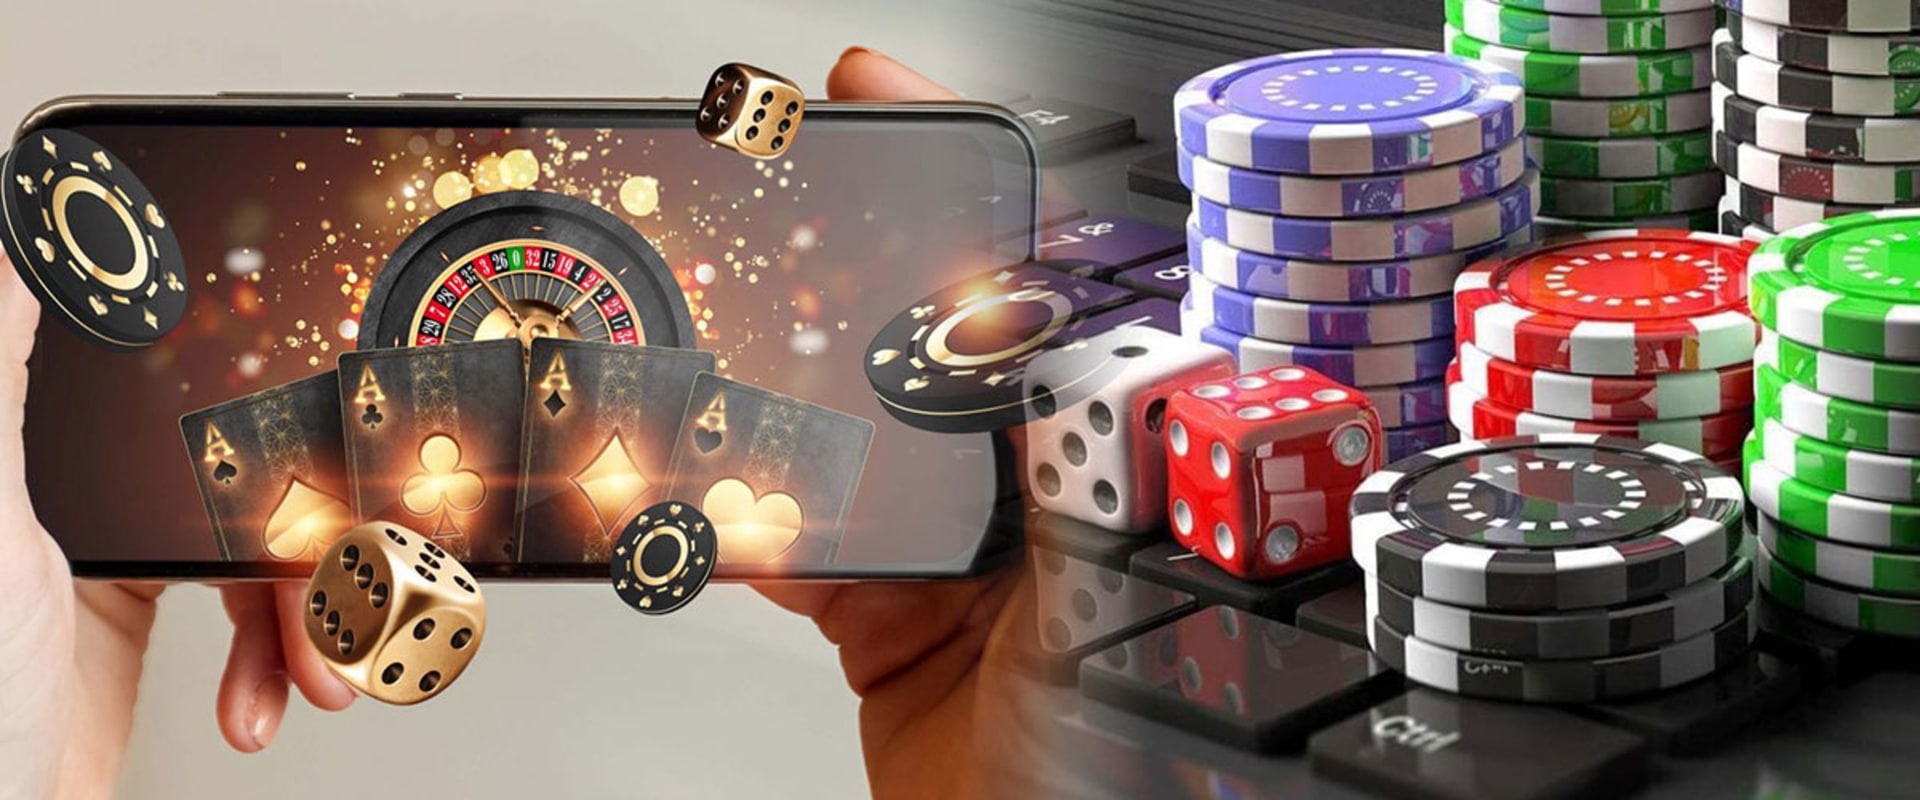 Delta i skicklighetsbaserade spel och sportspel istället för kasinon